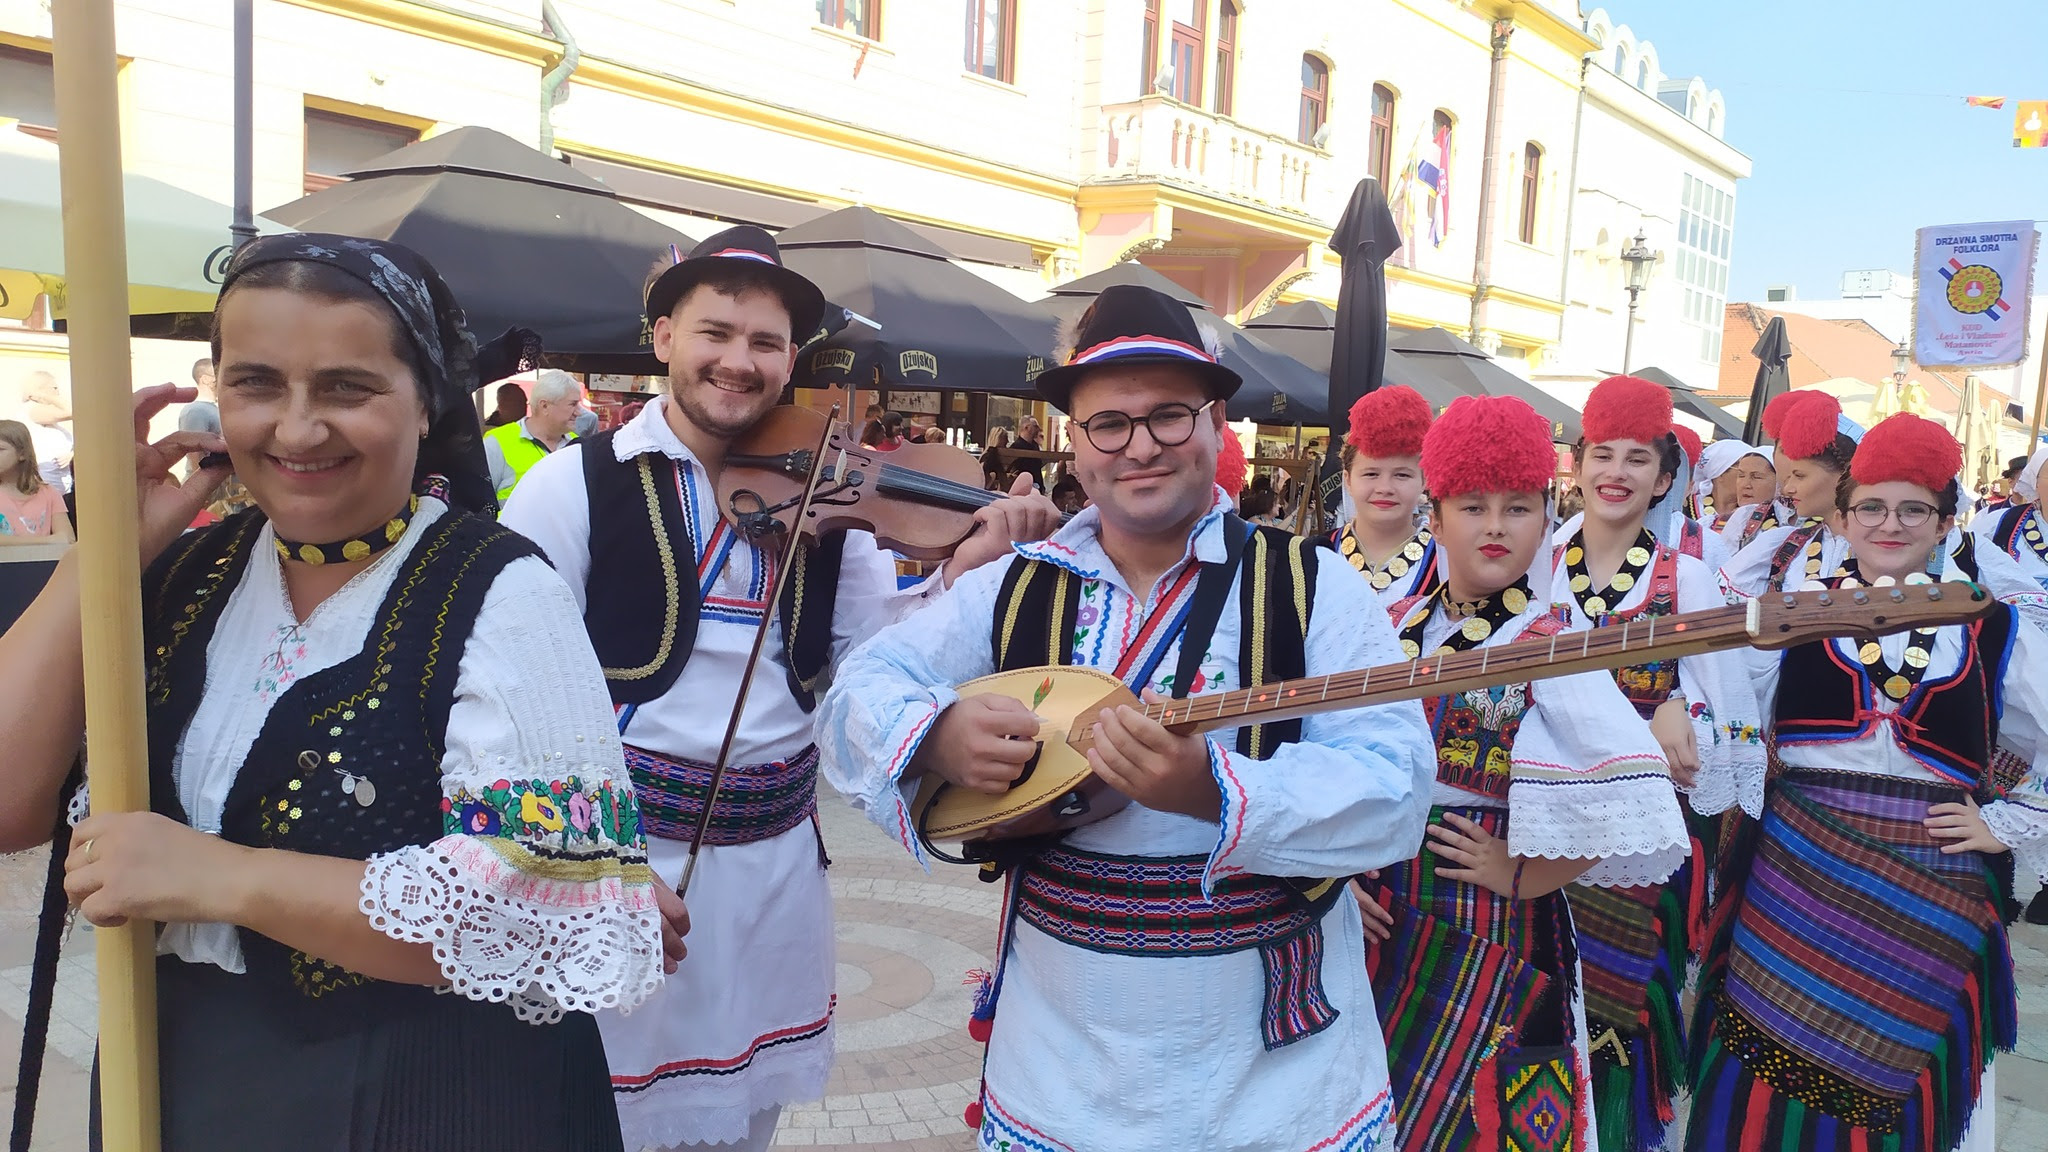 "Pride of Croatia: The Magnificent 58th Vinkovci Autumn Festival Parade"